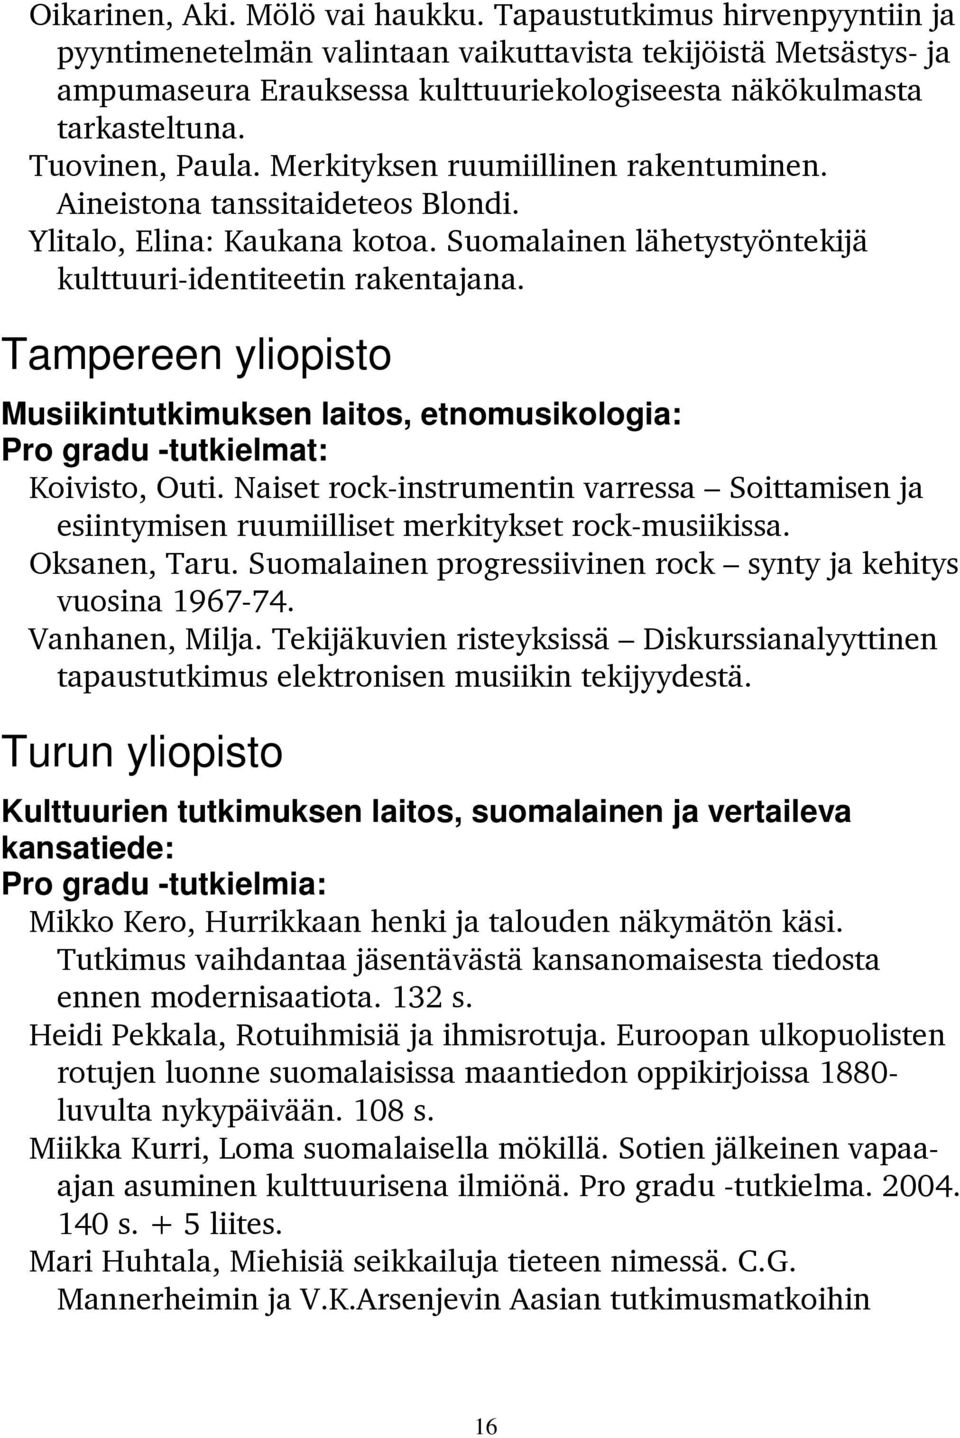 Merkityksen ruumiillinen rakentuminen. Aineistona tanssitaideteos Blondi. Ylitalo, Elina: Kaukana kotoa. Suomalainen lähetystyöntekijä kulttuuri-identiteetin rakentajana.